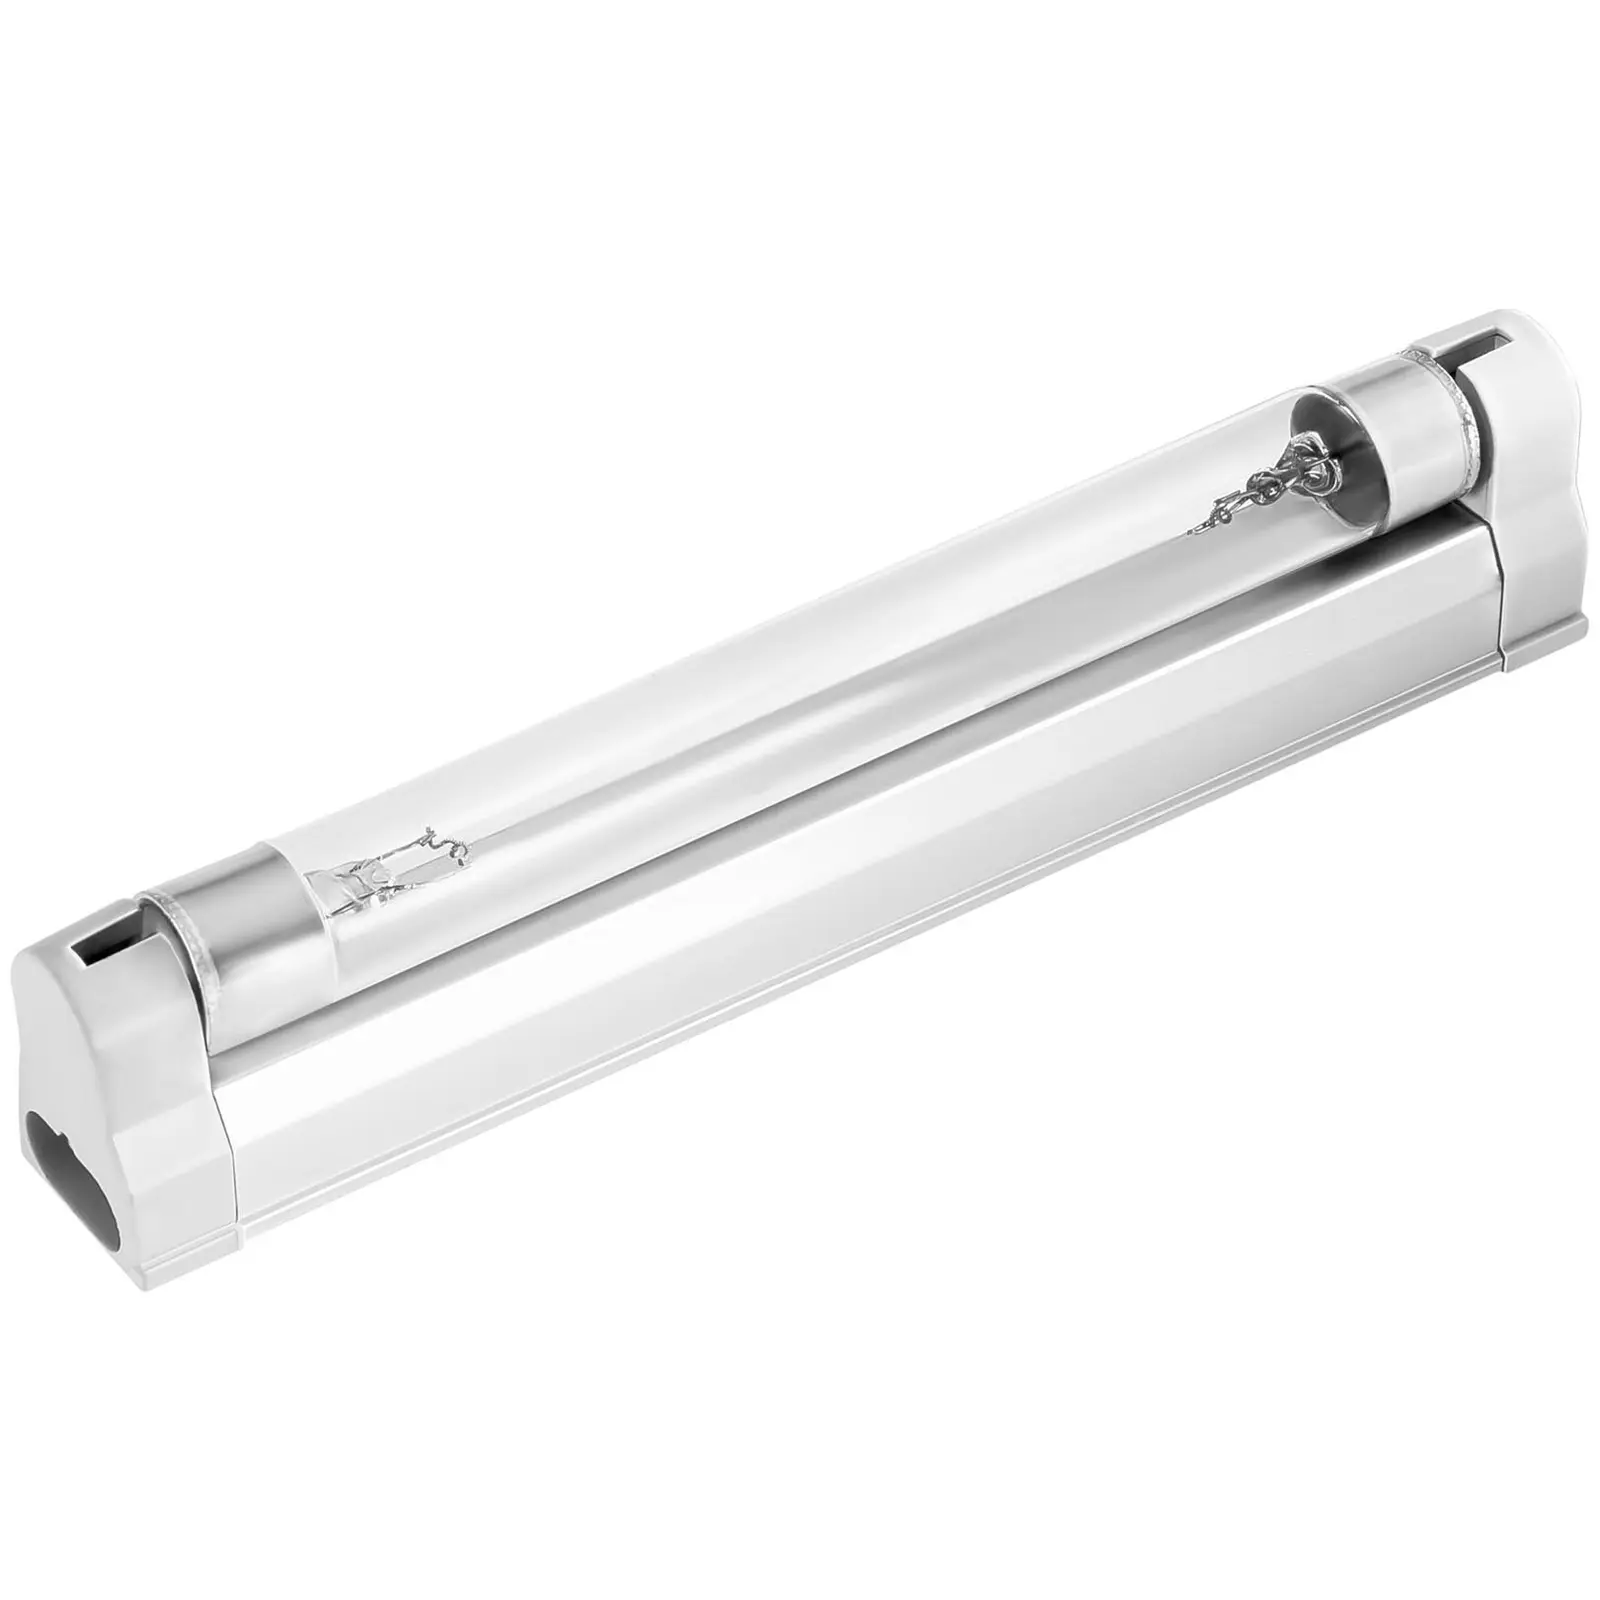 UV Lamp AIRCLEAN - 230 V